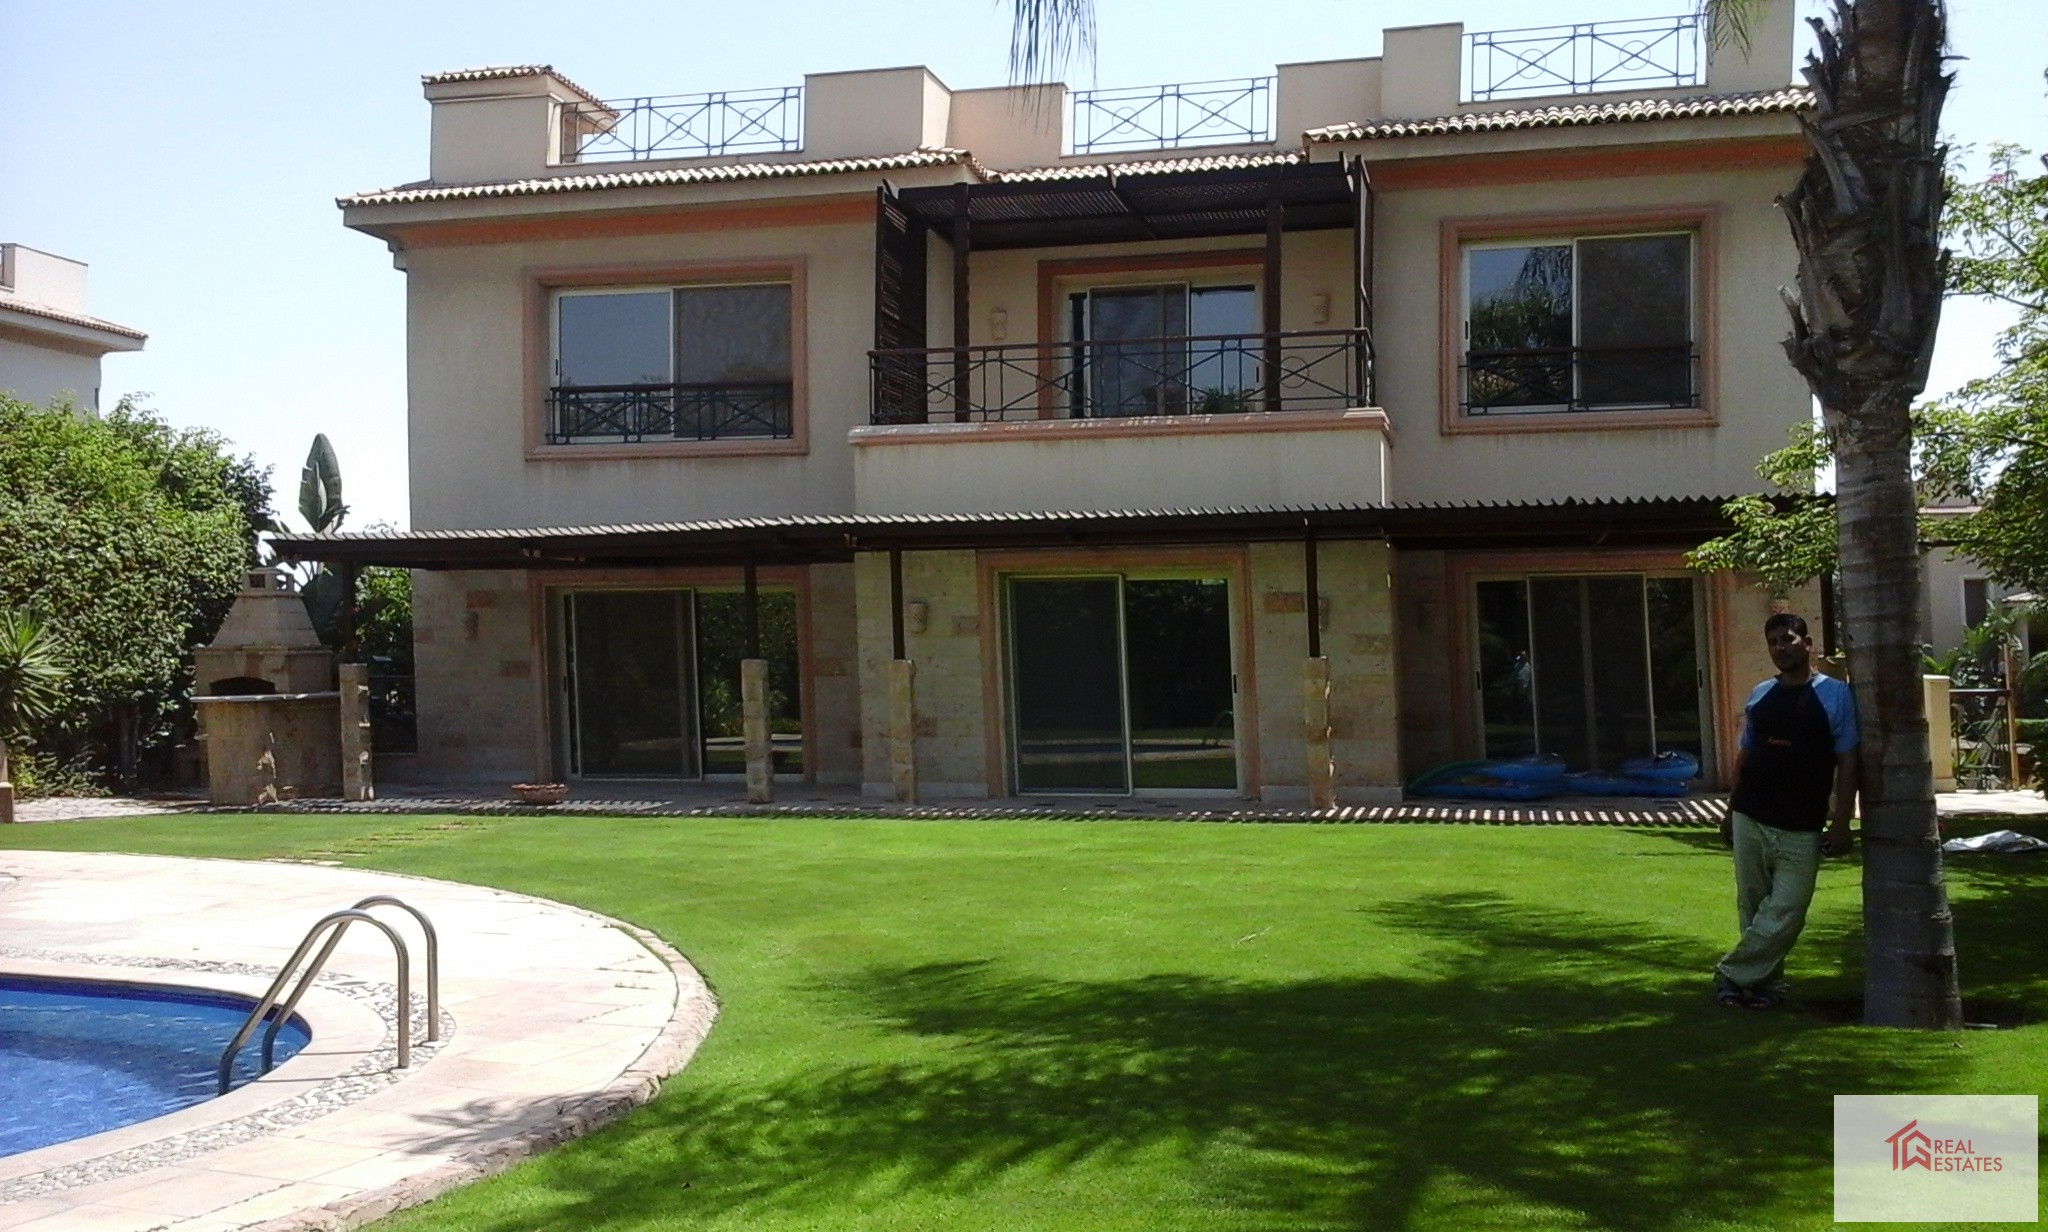 Interiores elegantes, hermoso jardín, gran terraza, hermosa área de piscina y excelente panorama, una increíble casa en Casa en alquiler en katameya heights golf NUEVO EL CAIRO EGIPTO